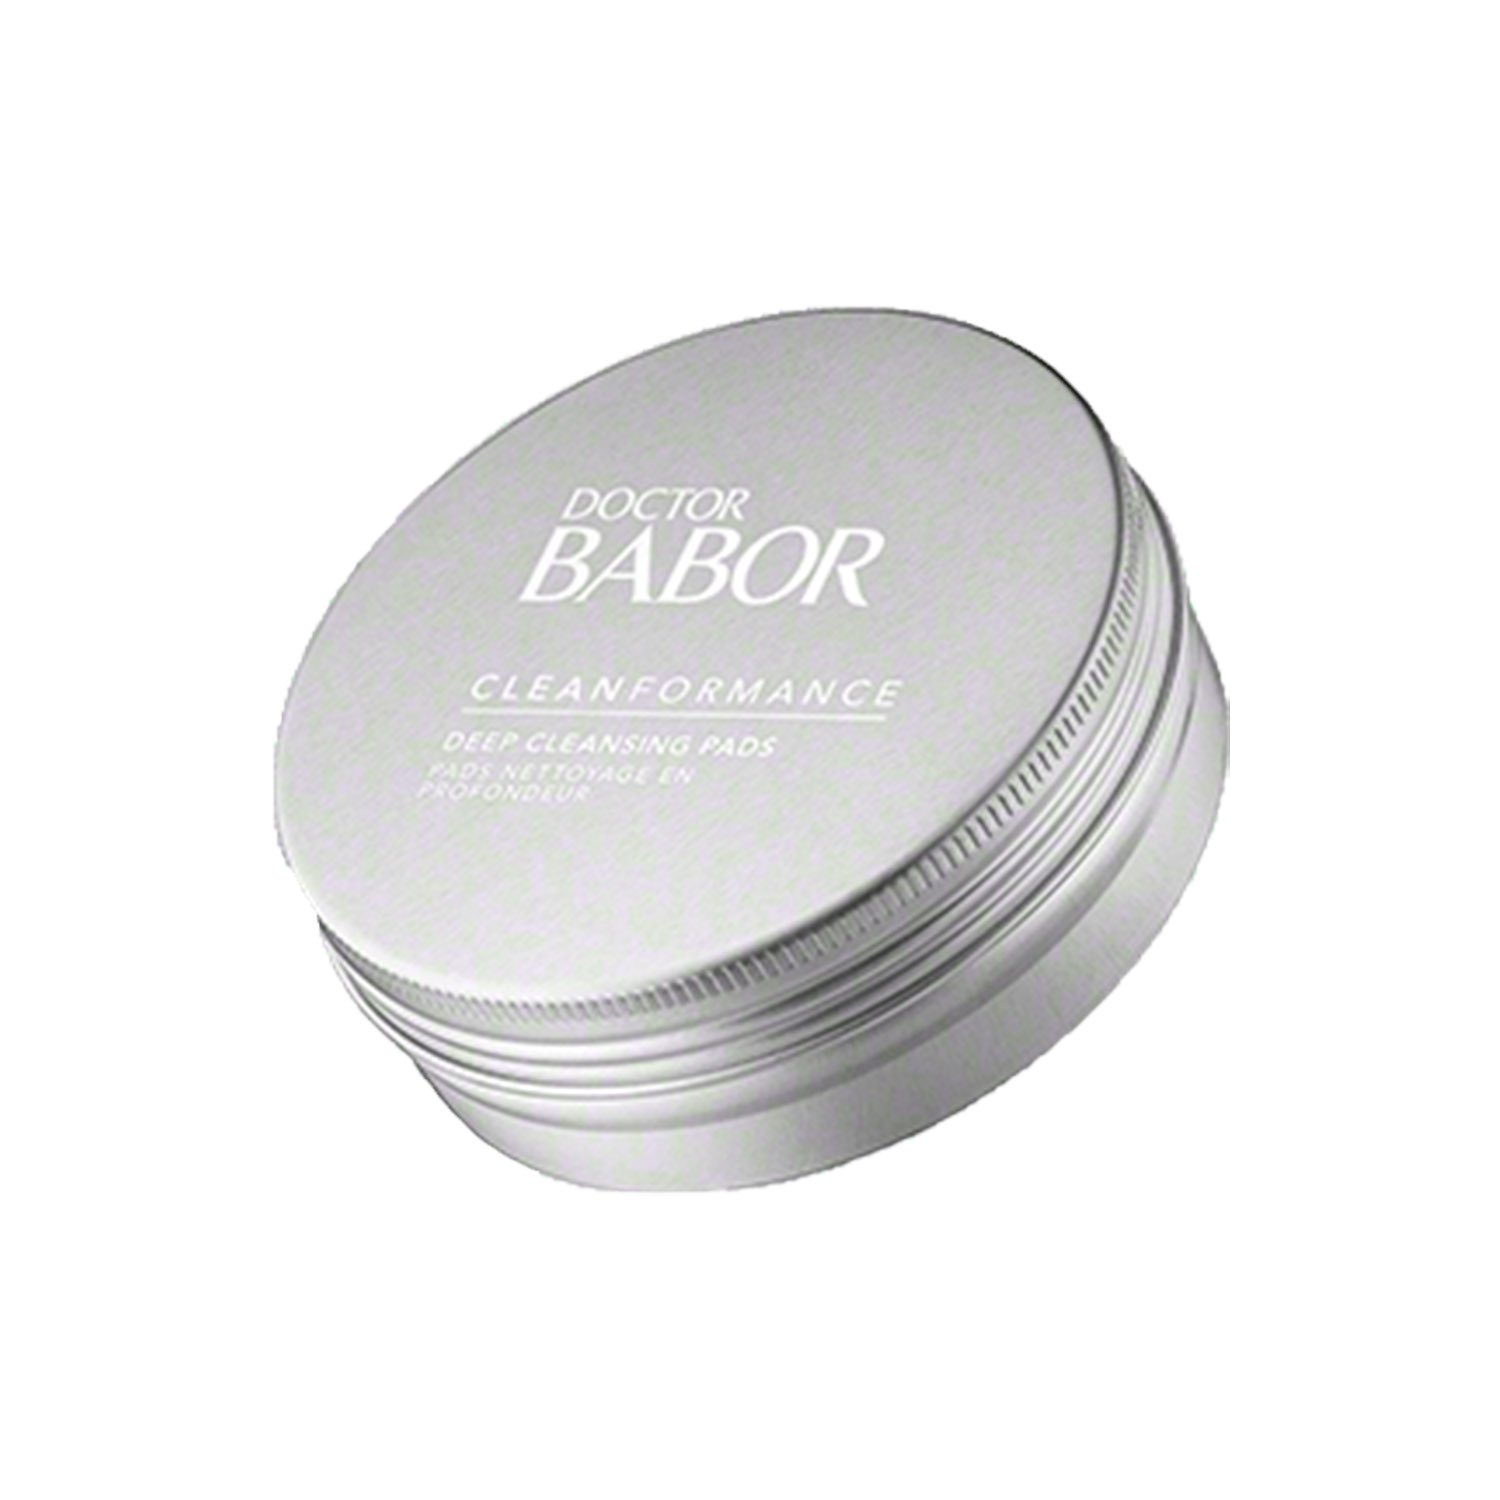 Пады для глубокого очищения кожи Babor Doctor Babor Clean Formance Deep Cleansing Pads, 20 шт. - фото 3